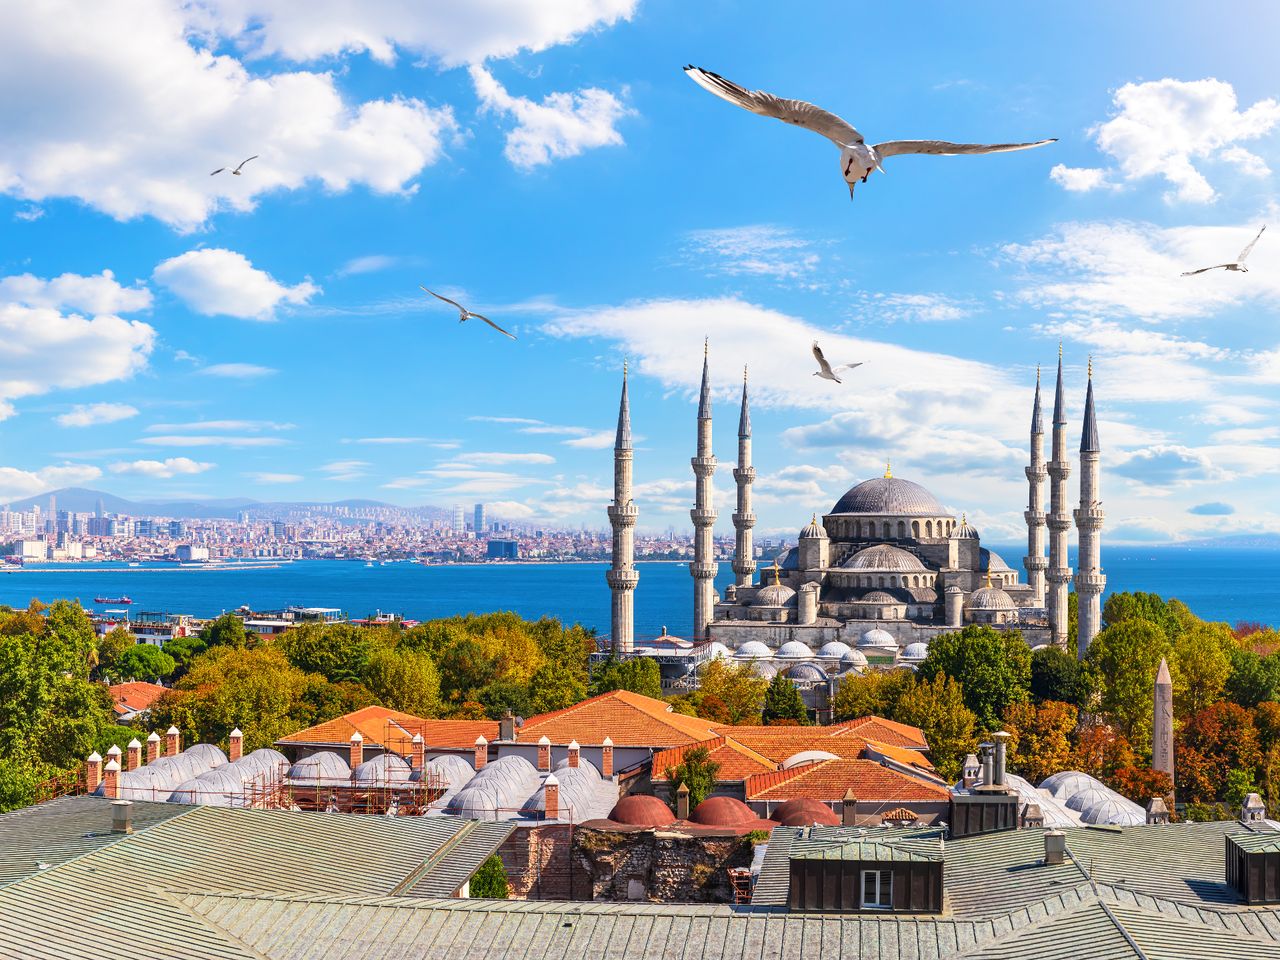 Притягательный Стамбул: рынок, котики, набережная  | Цена 200€, отзывы, описание экскурсии